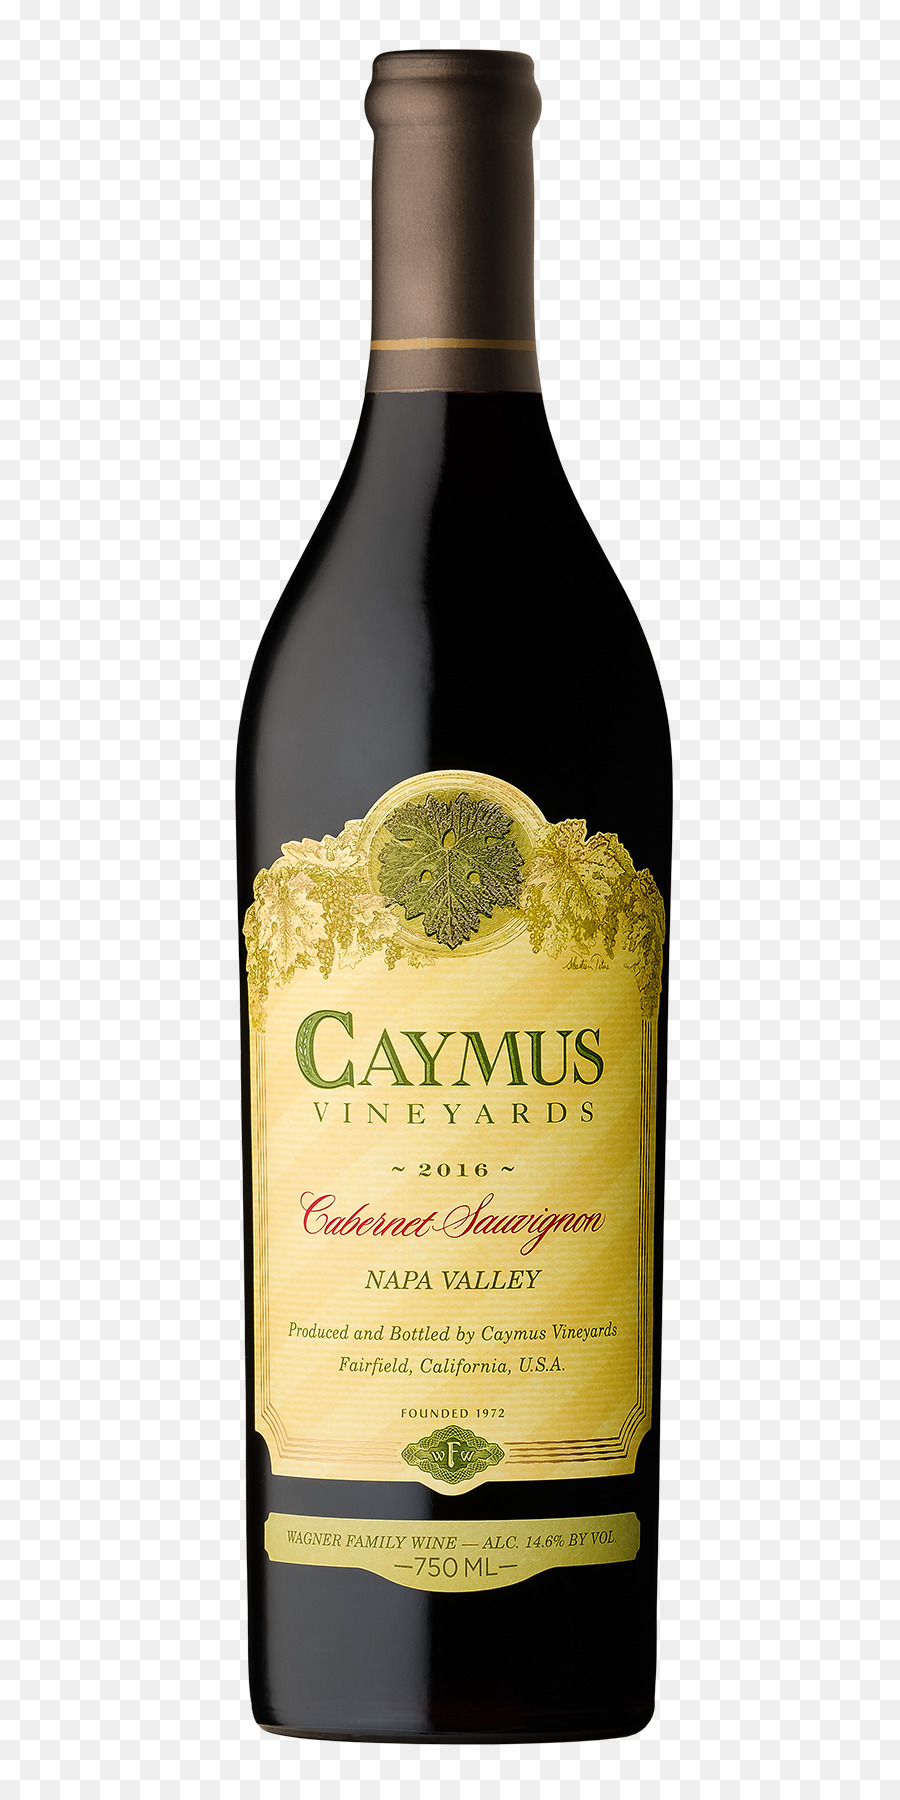 Caymus Vigneti di Cabernet Sauvignon Vino Rosso Sauvignon blanc - Napa Valley